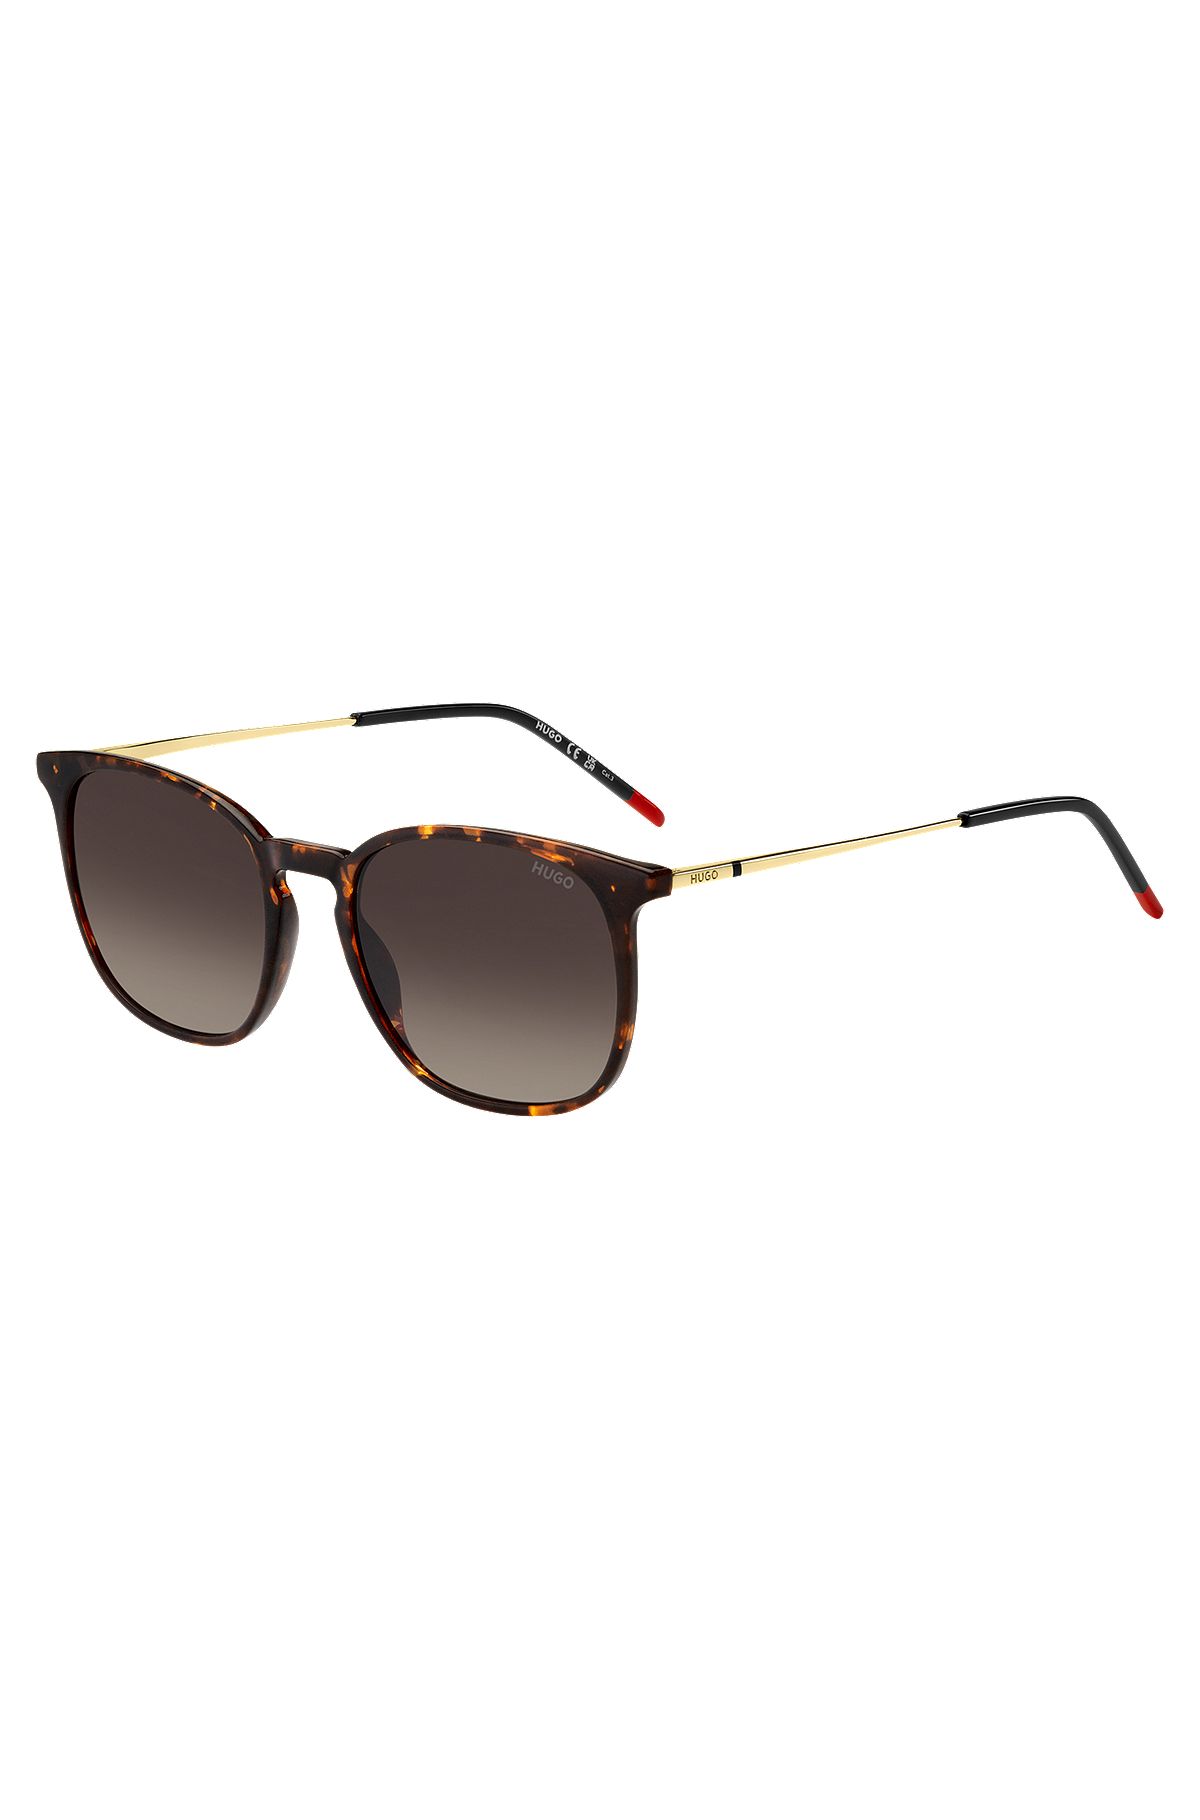 Sonnenbrille mit Havanna-Muster und goldfarbenen Bügeln, Braun